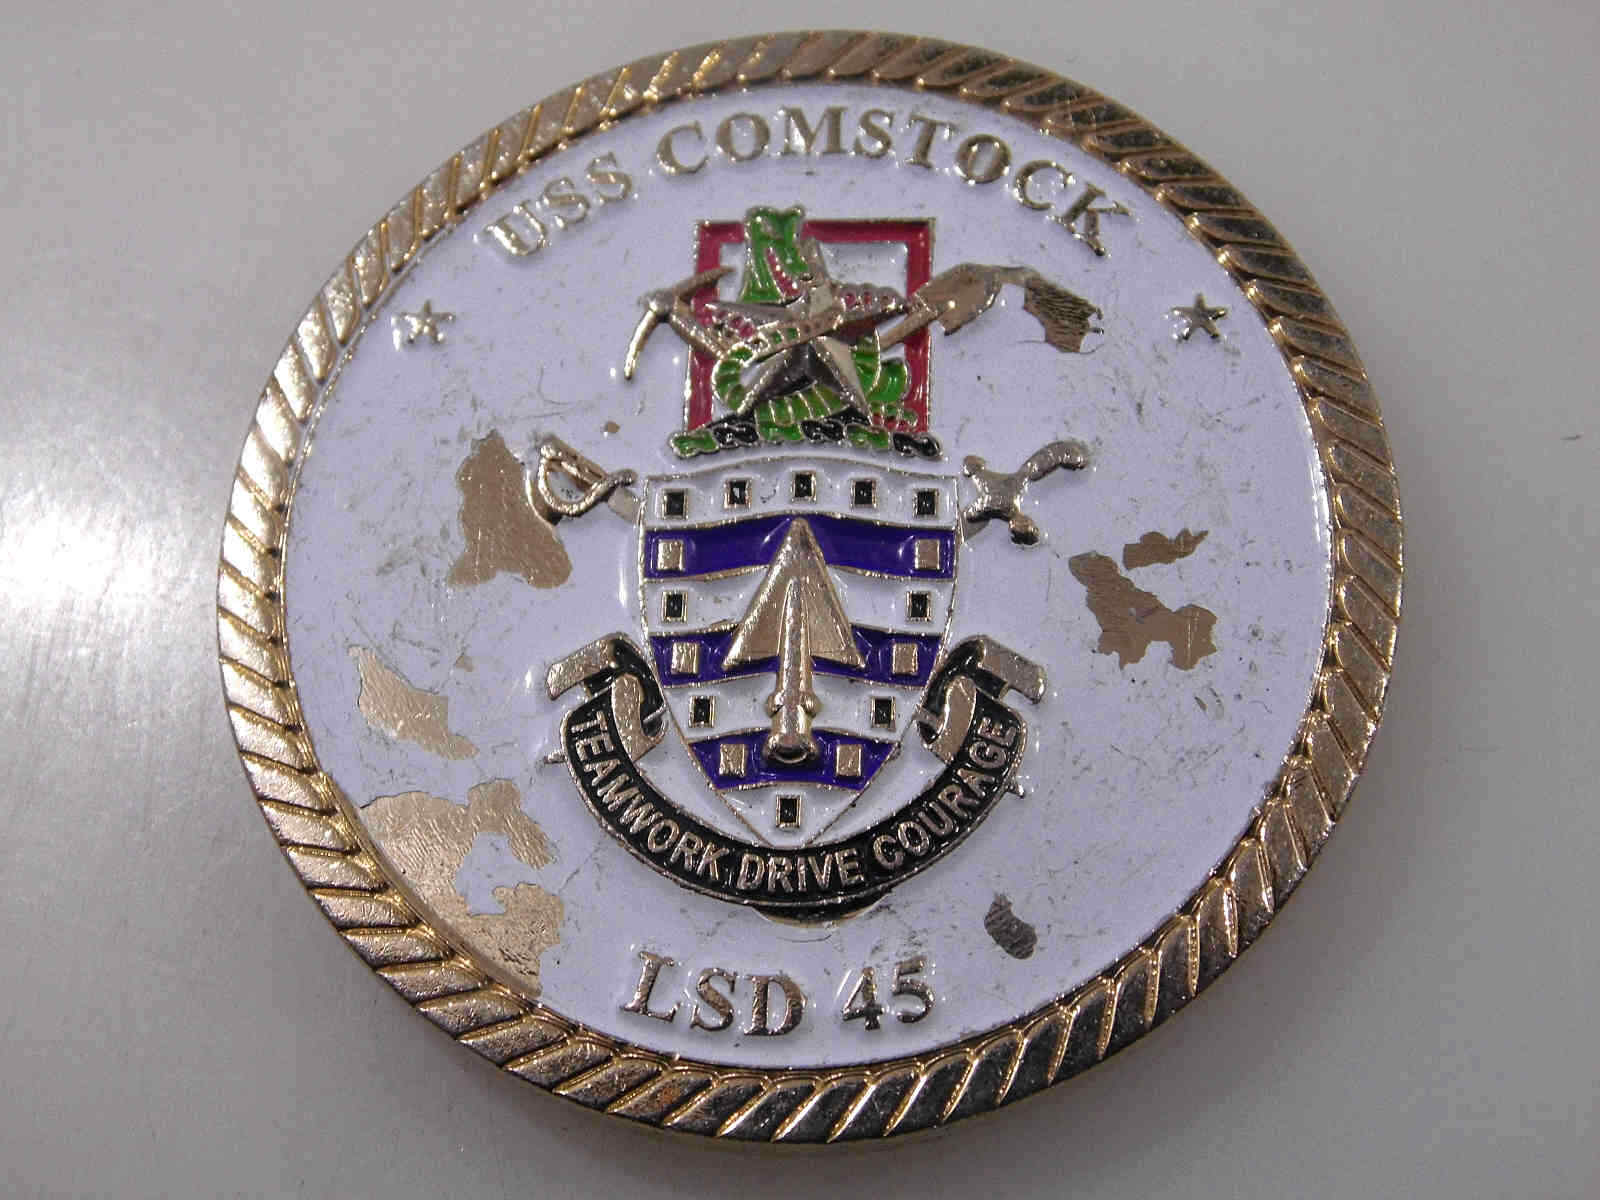 USS COMSTOCK LSD 45 COMMANDING OFFICER CHALLENGE COIN